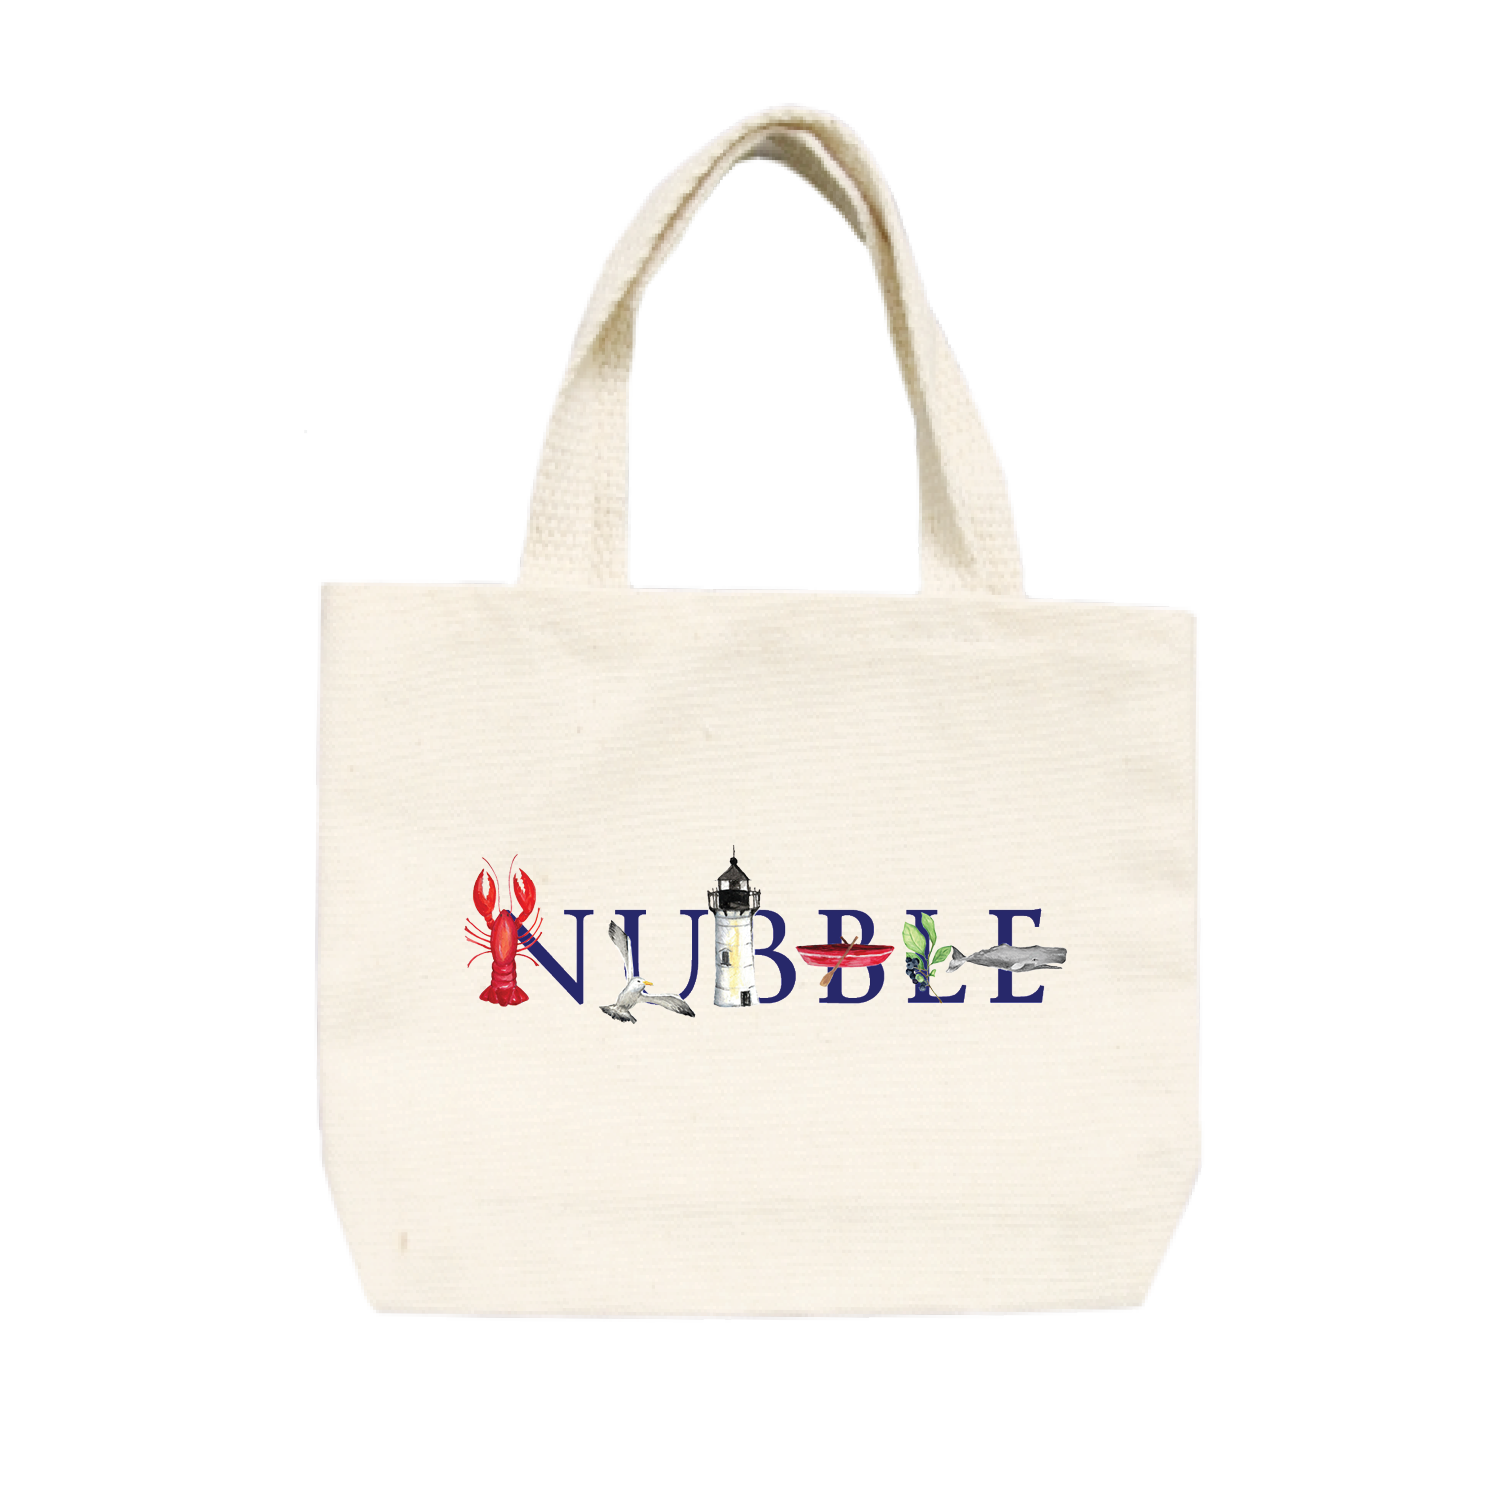 nubble small tote